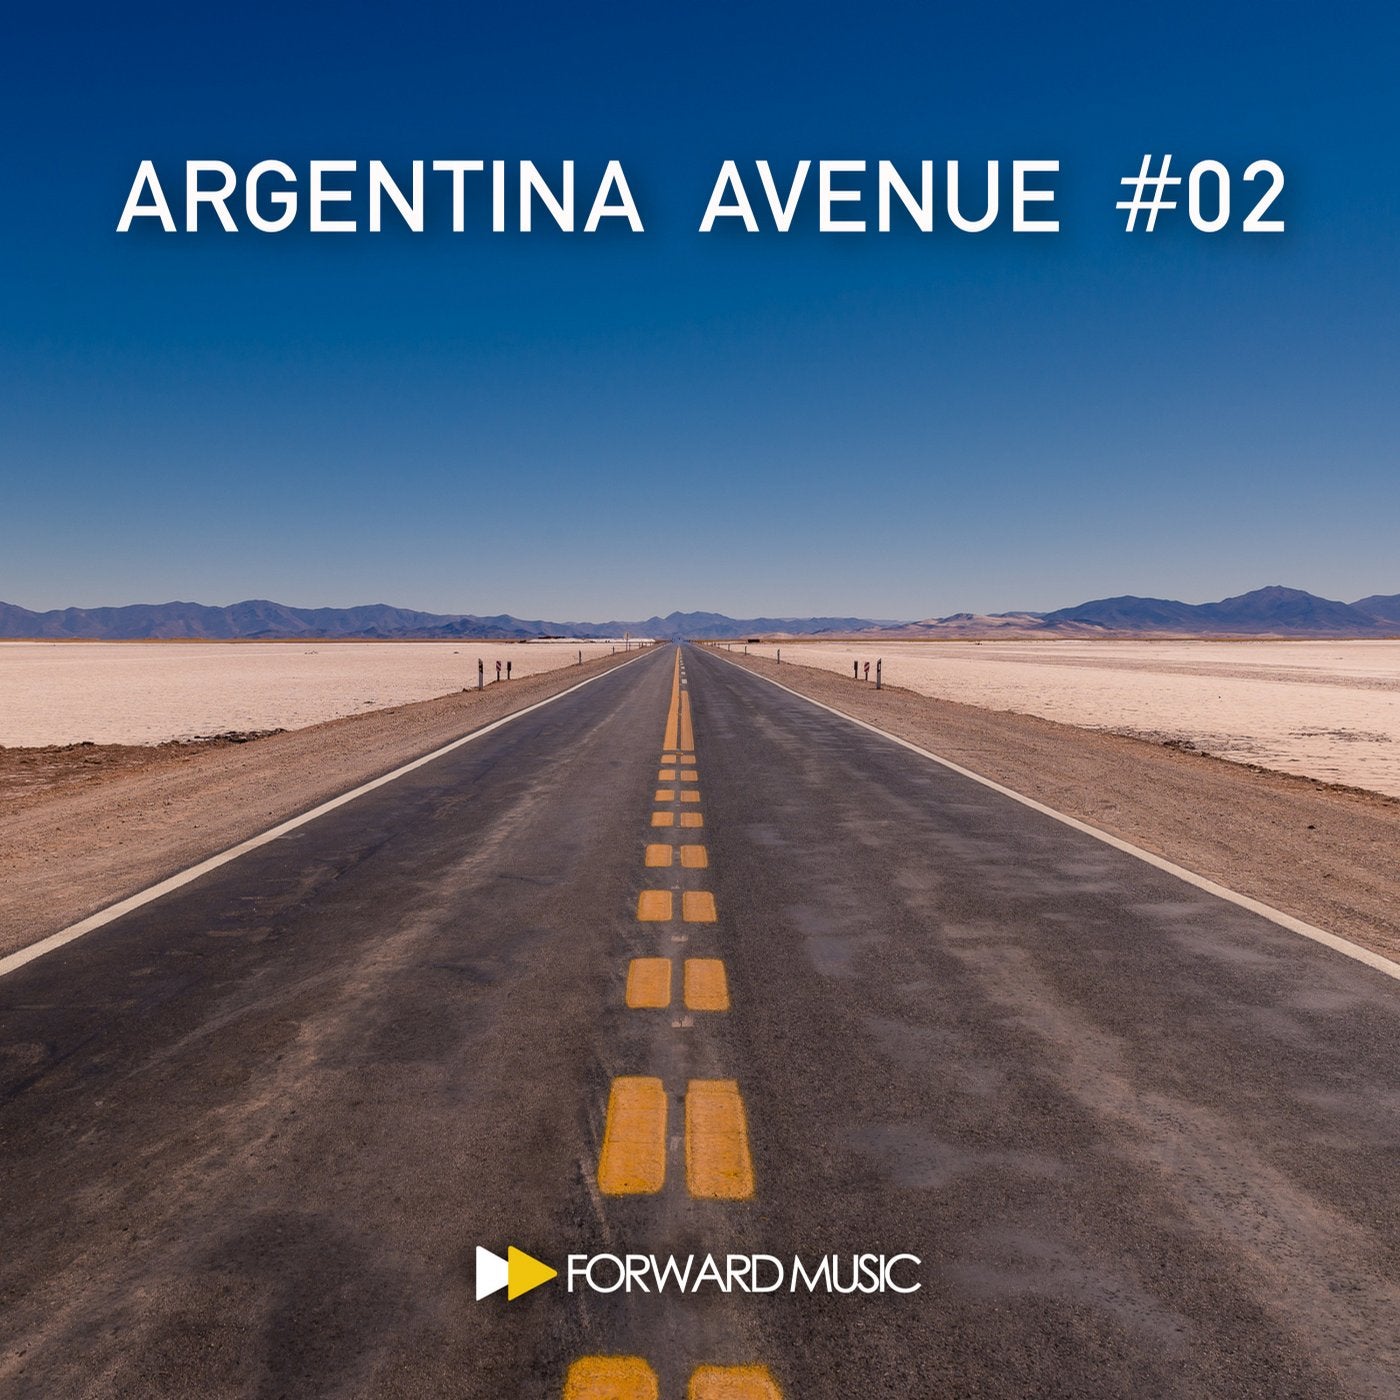 Argentina Avenue #02